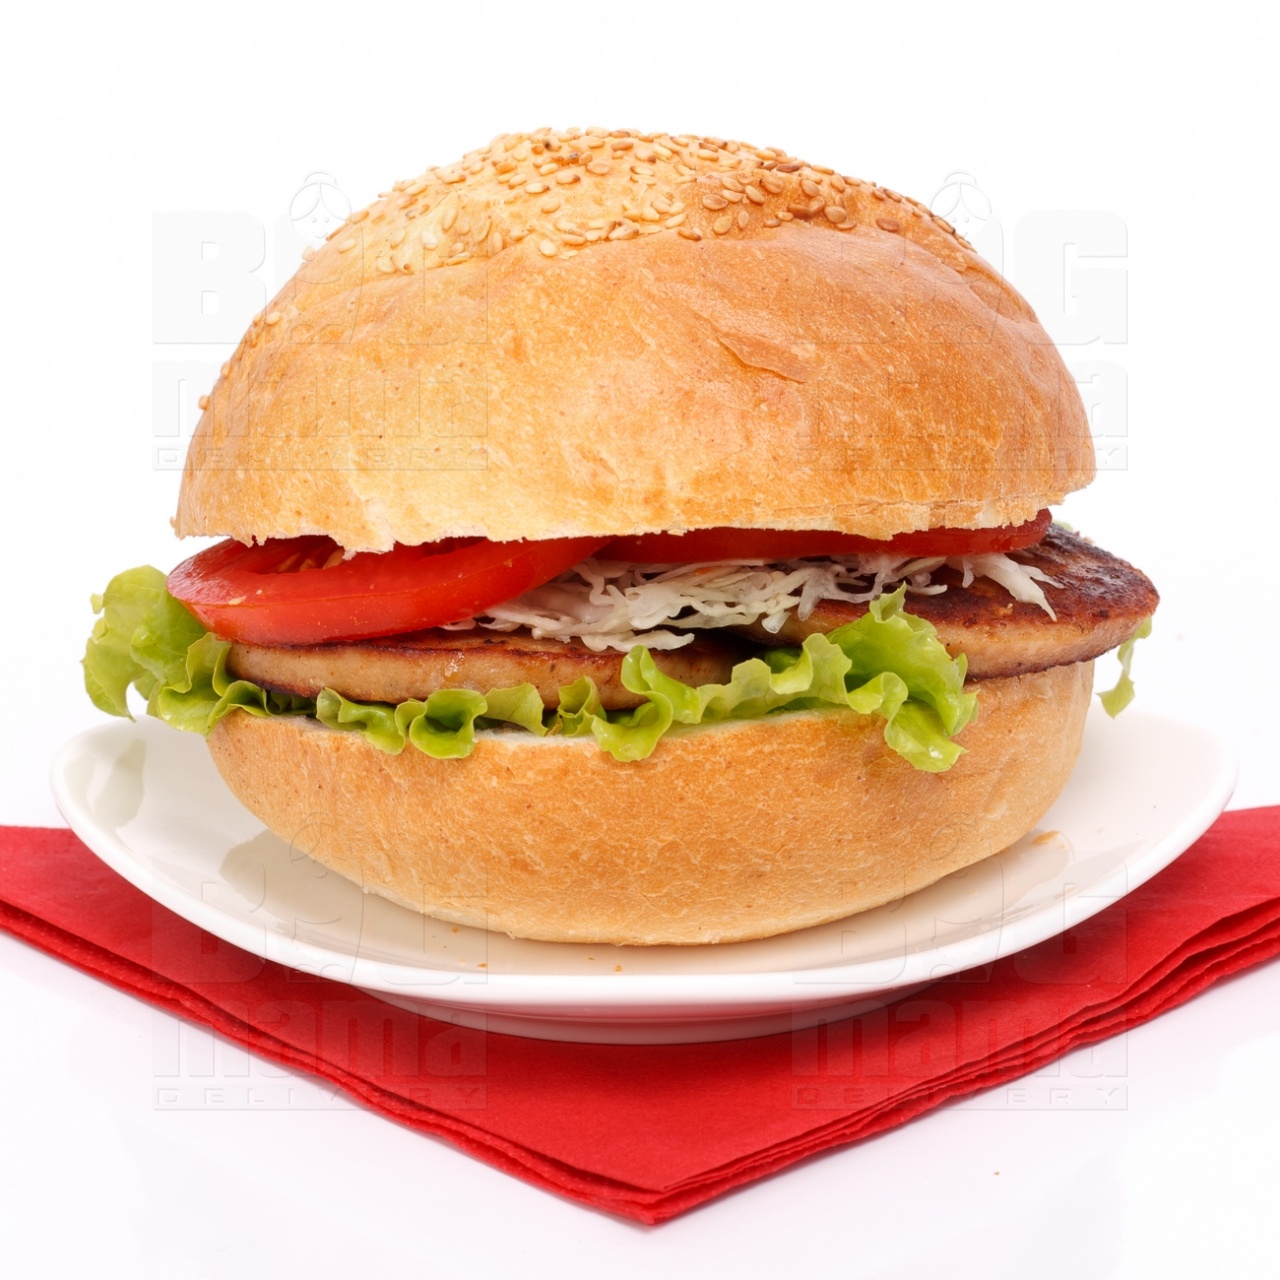 Product #49 image - Small hamburger